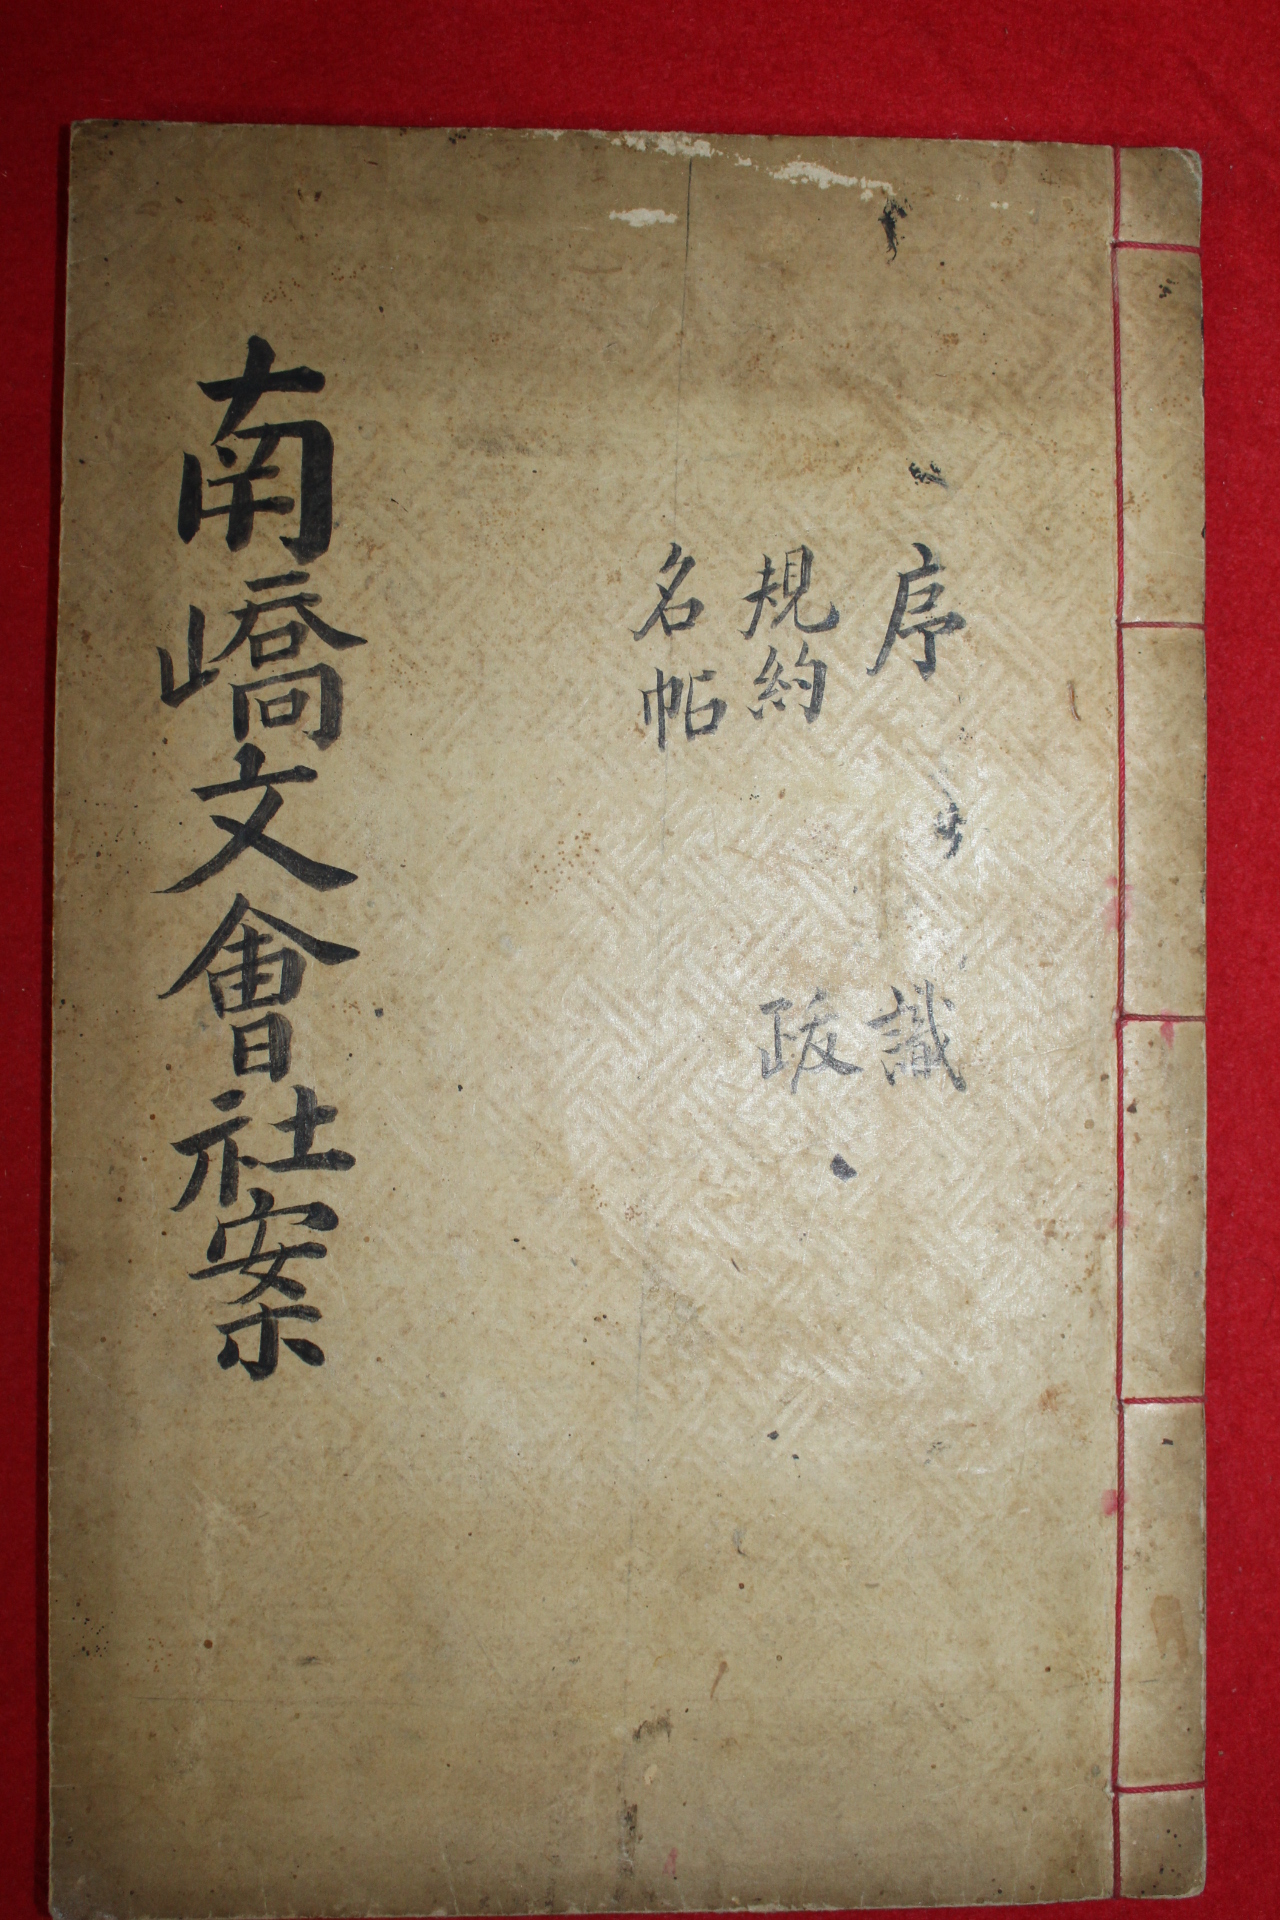 1929년 노재수(盧再洙)편 남교문회사안(南嶠文會社案) 1책완질